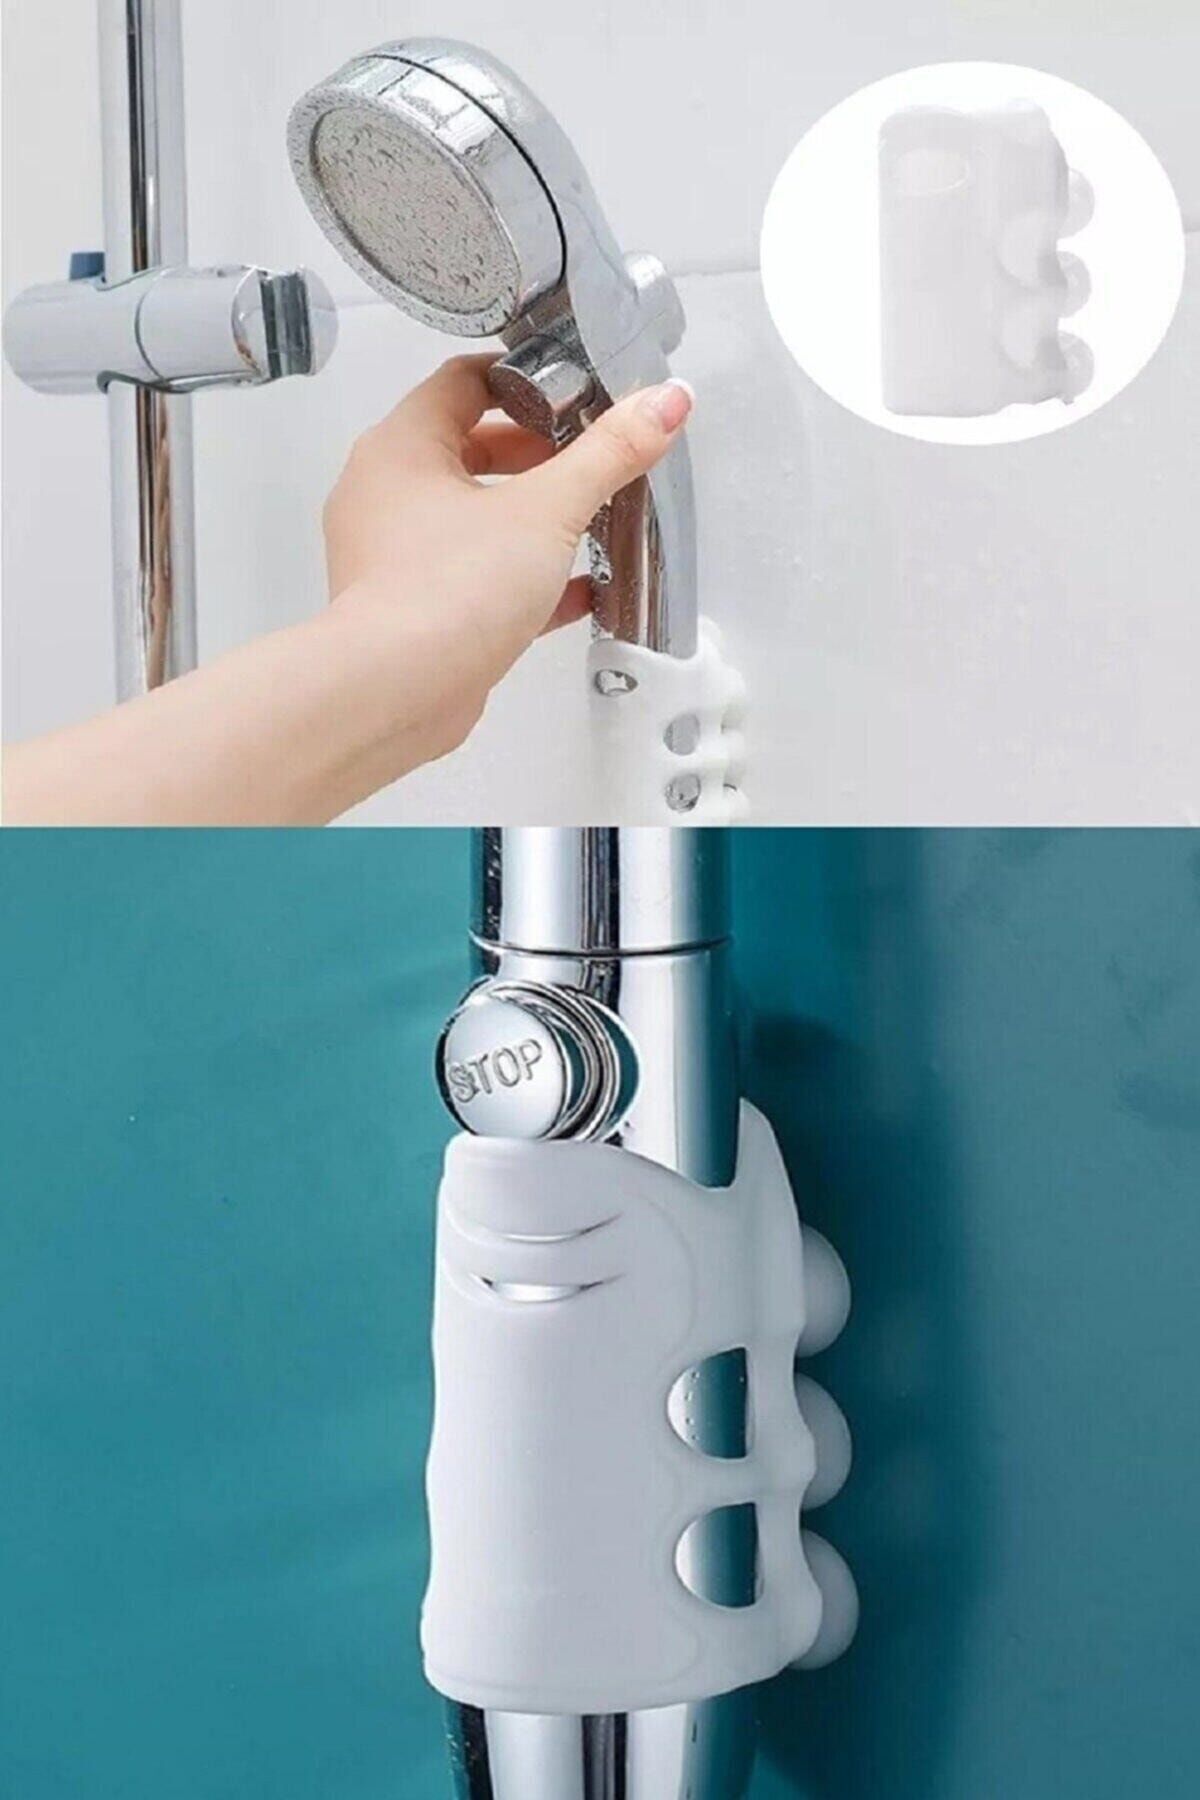 Seram Collection Vantuzlu Duş Başlığı Tutacağı Silikon Vantuzlu Banyo Başlığı Askı Tutucu Kanca Aparat